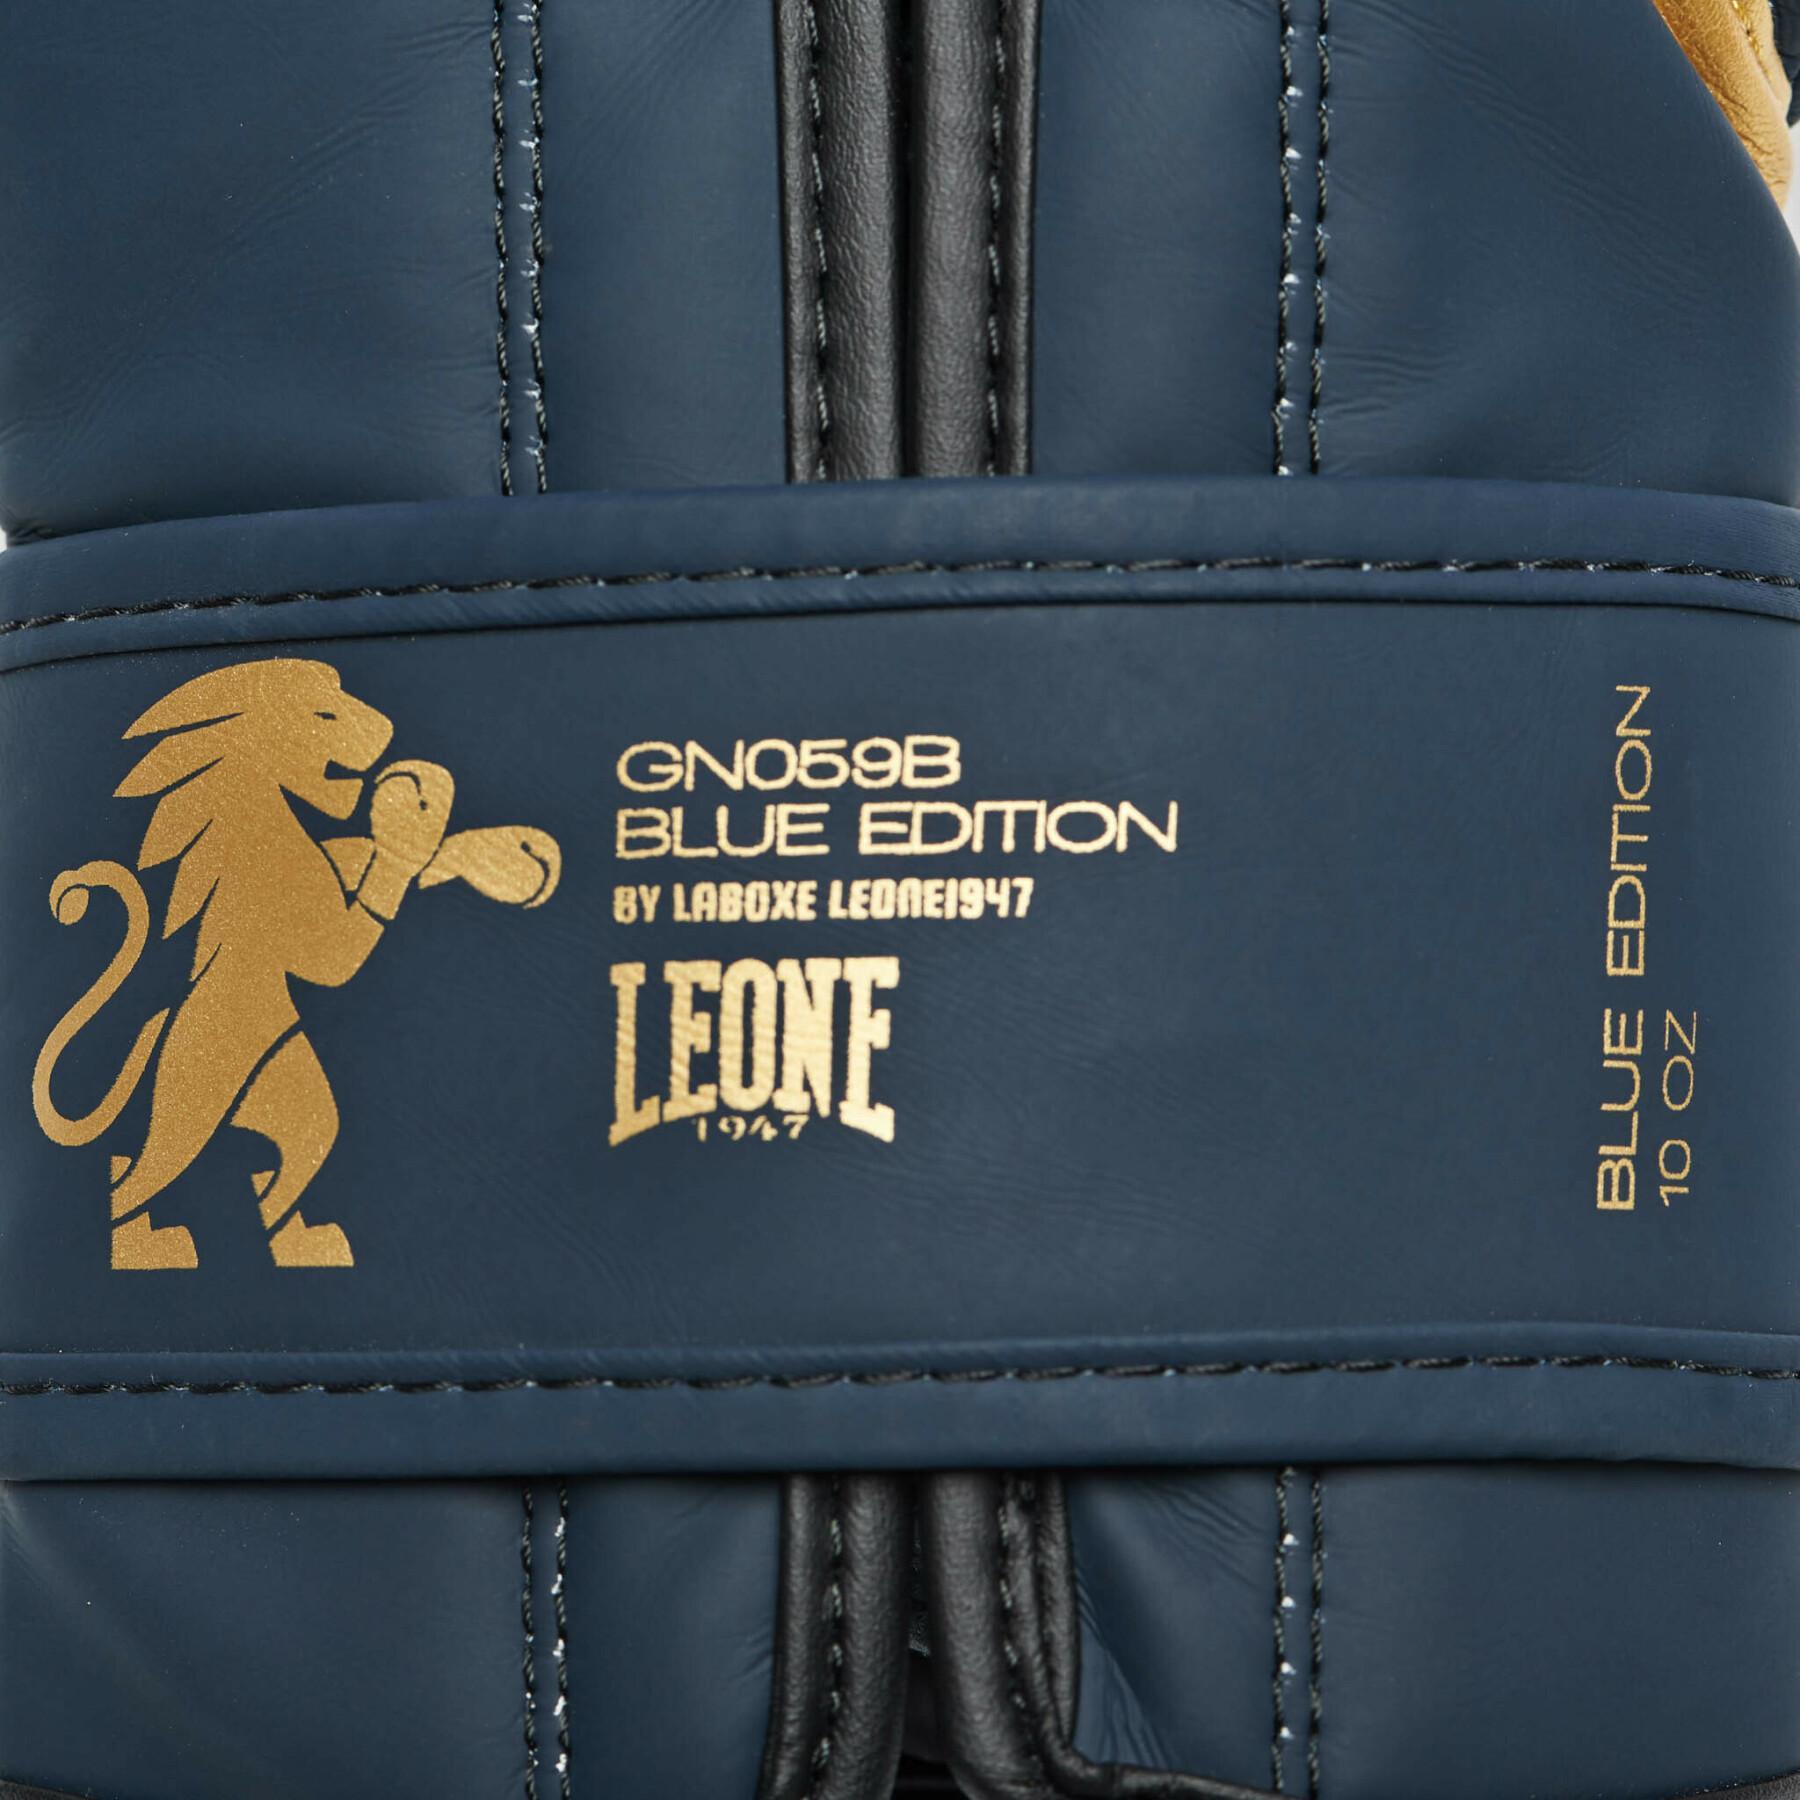 Gants de boxe Leone Blue Edition 10 oz